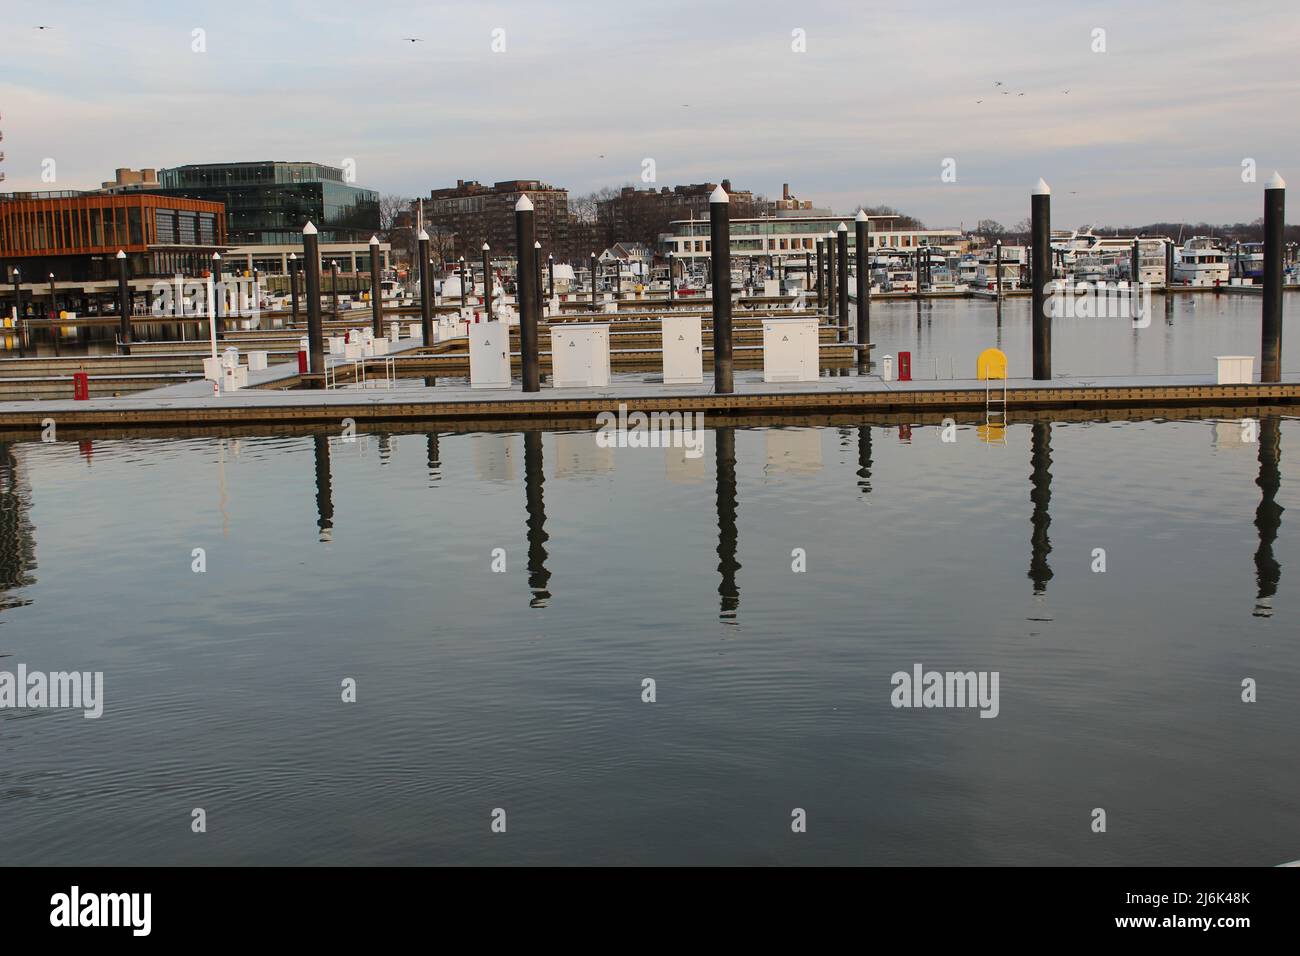 Beruhigen Sie die Wharf Boote Washington DC Waterfront Pier.JPG Stockfoto